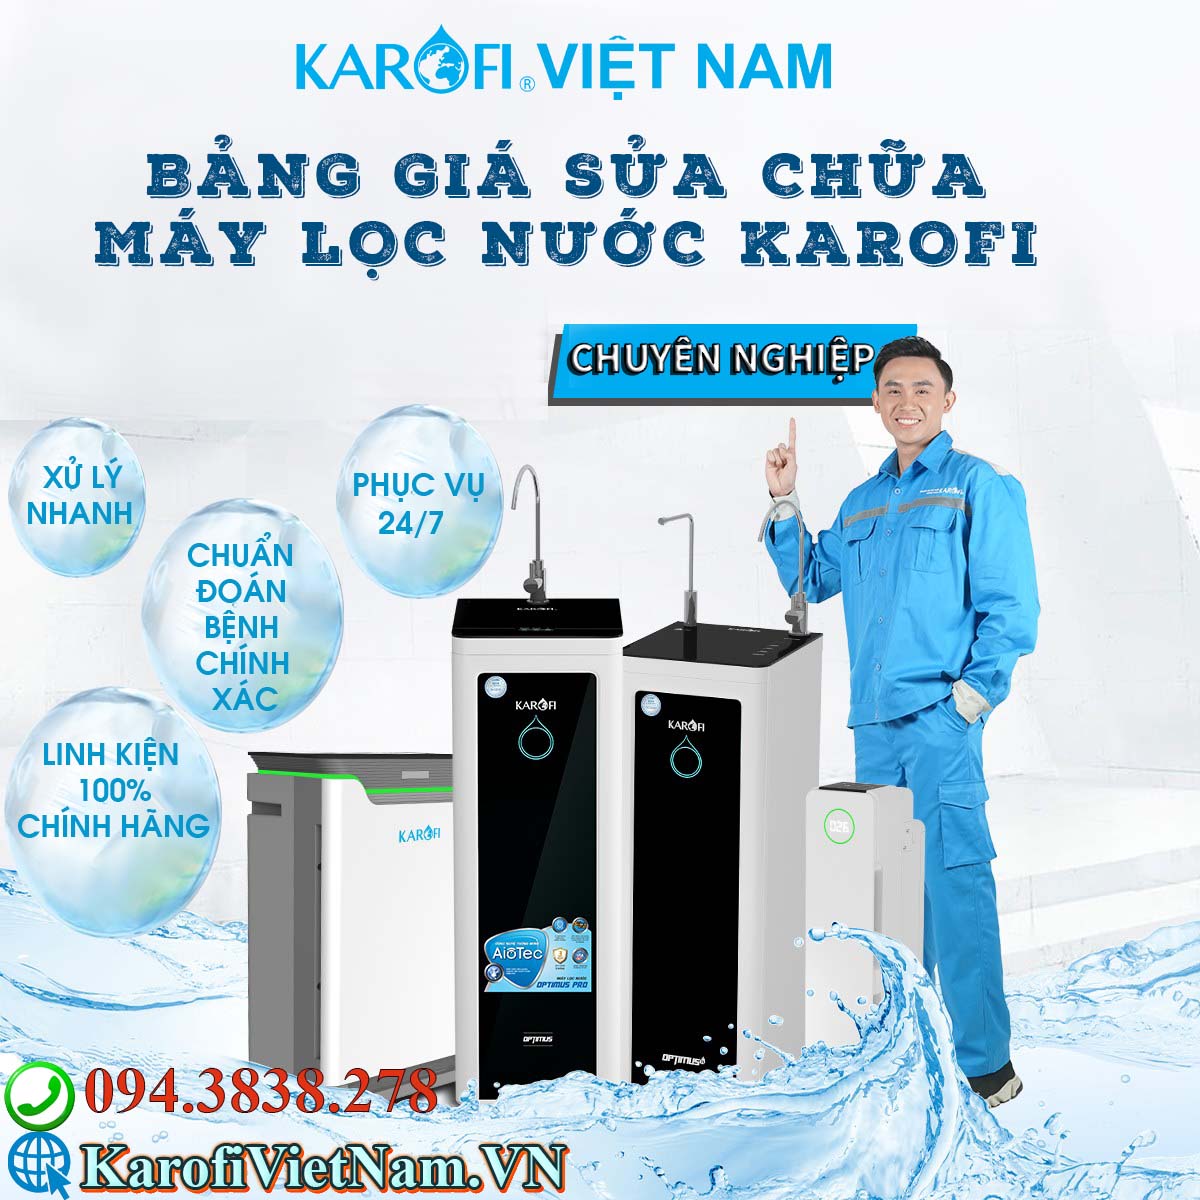 Bảng giá sửa chữa máy lọc nước Karofi tại Karofi Việt Nam